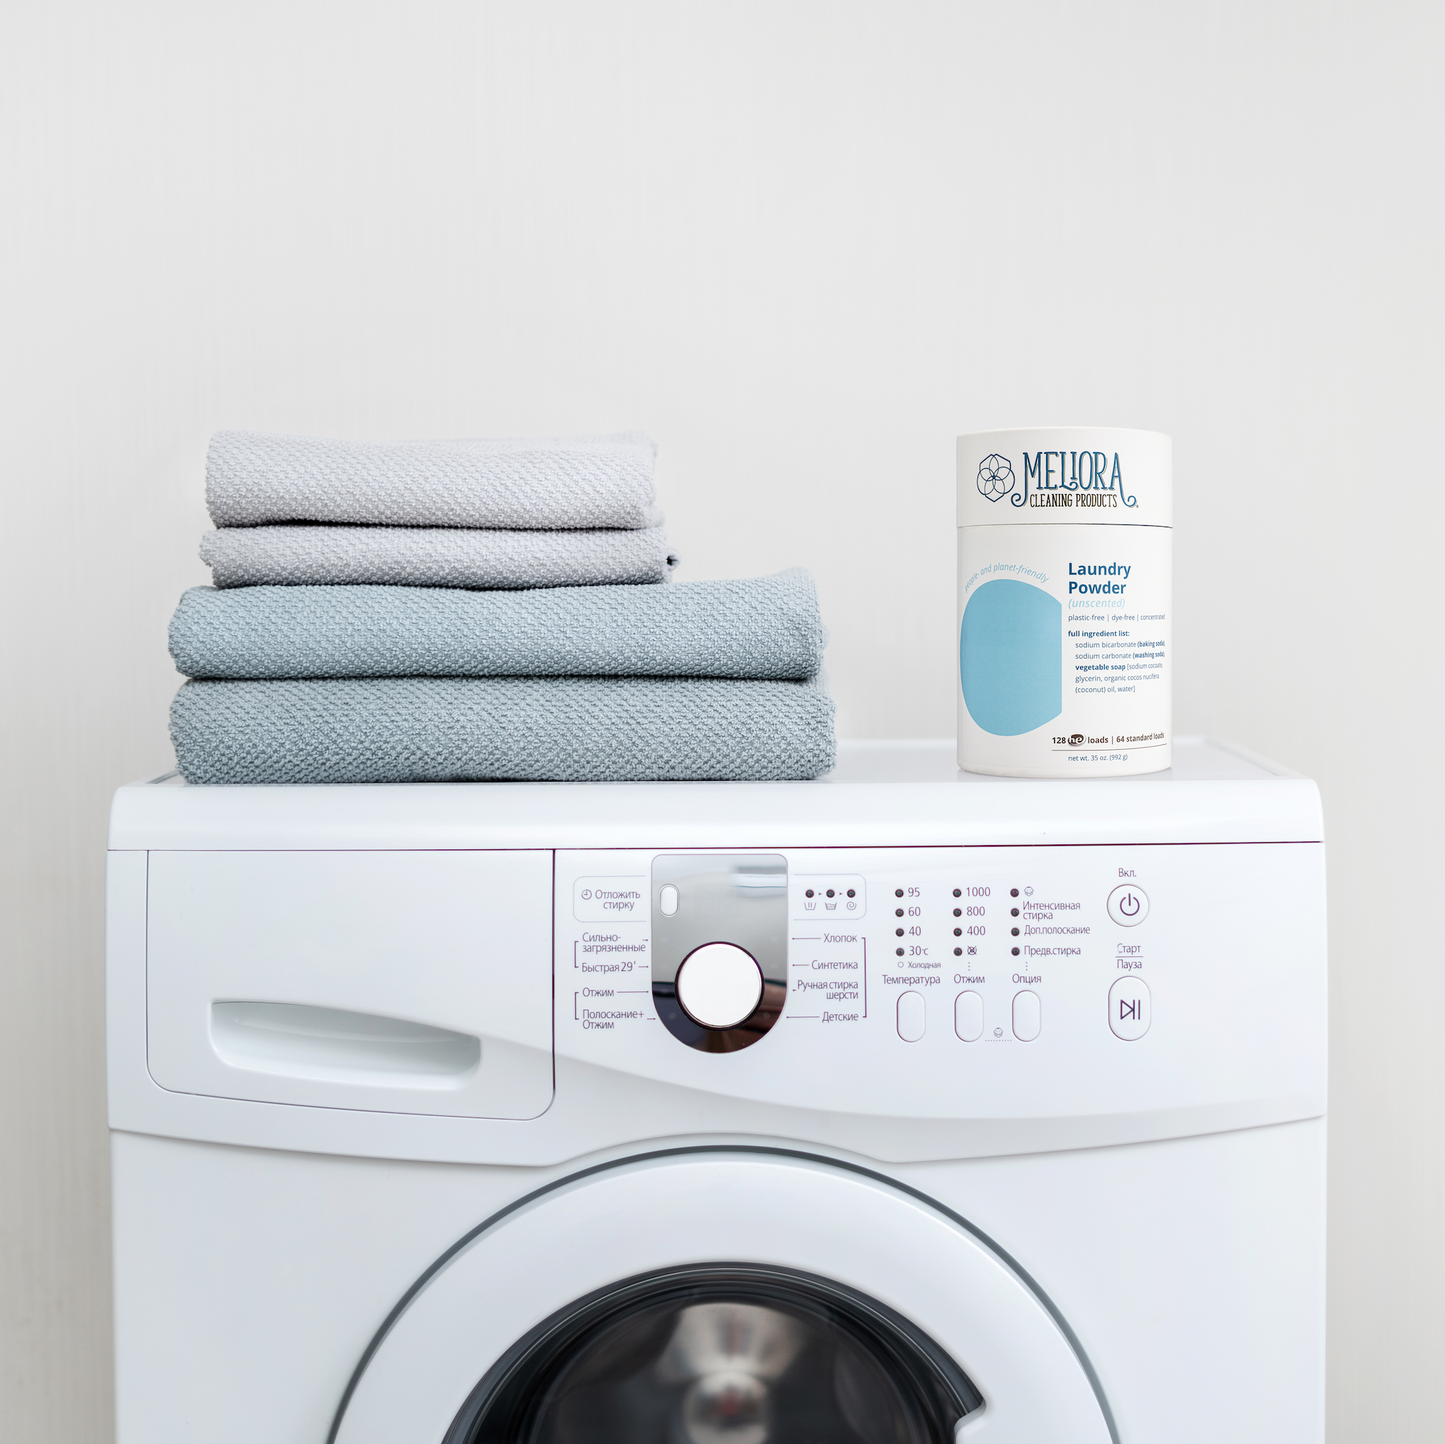 Meliora Laundry Powder Washer MADE SAFE